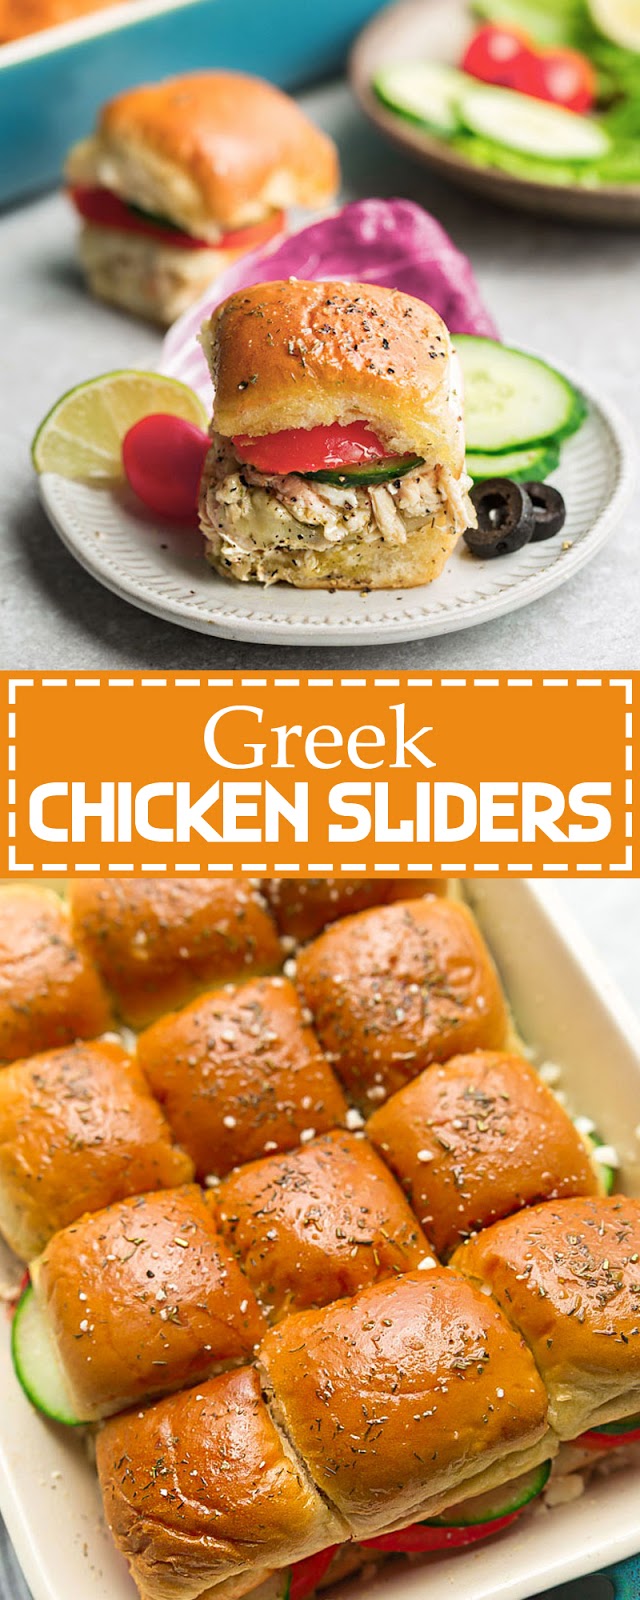 GREEK CHICKEN SLIDERS